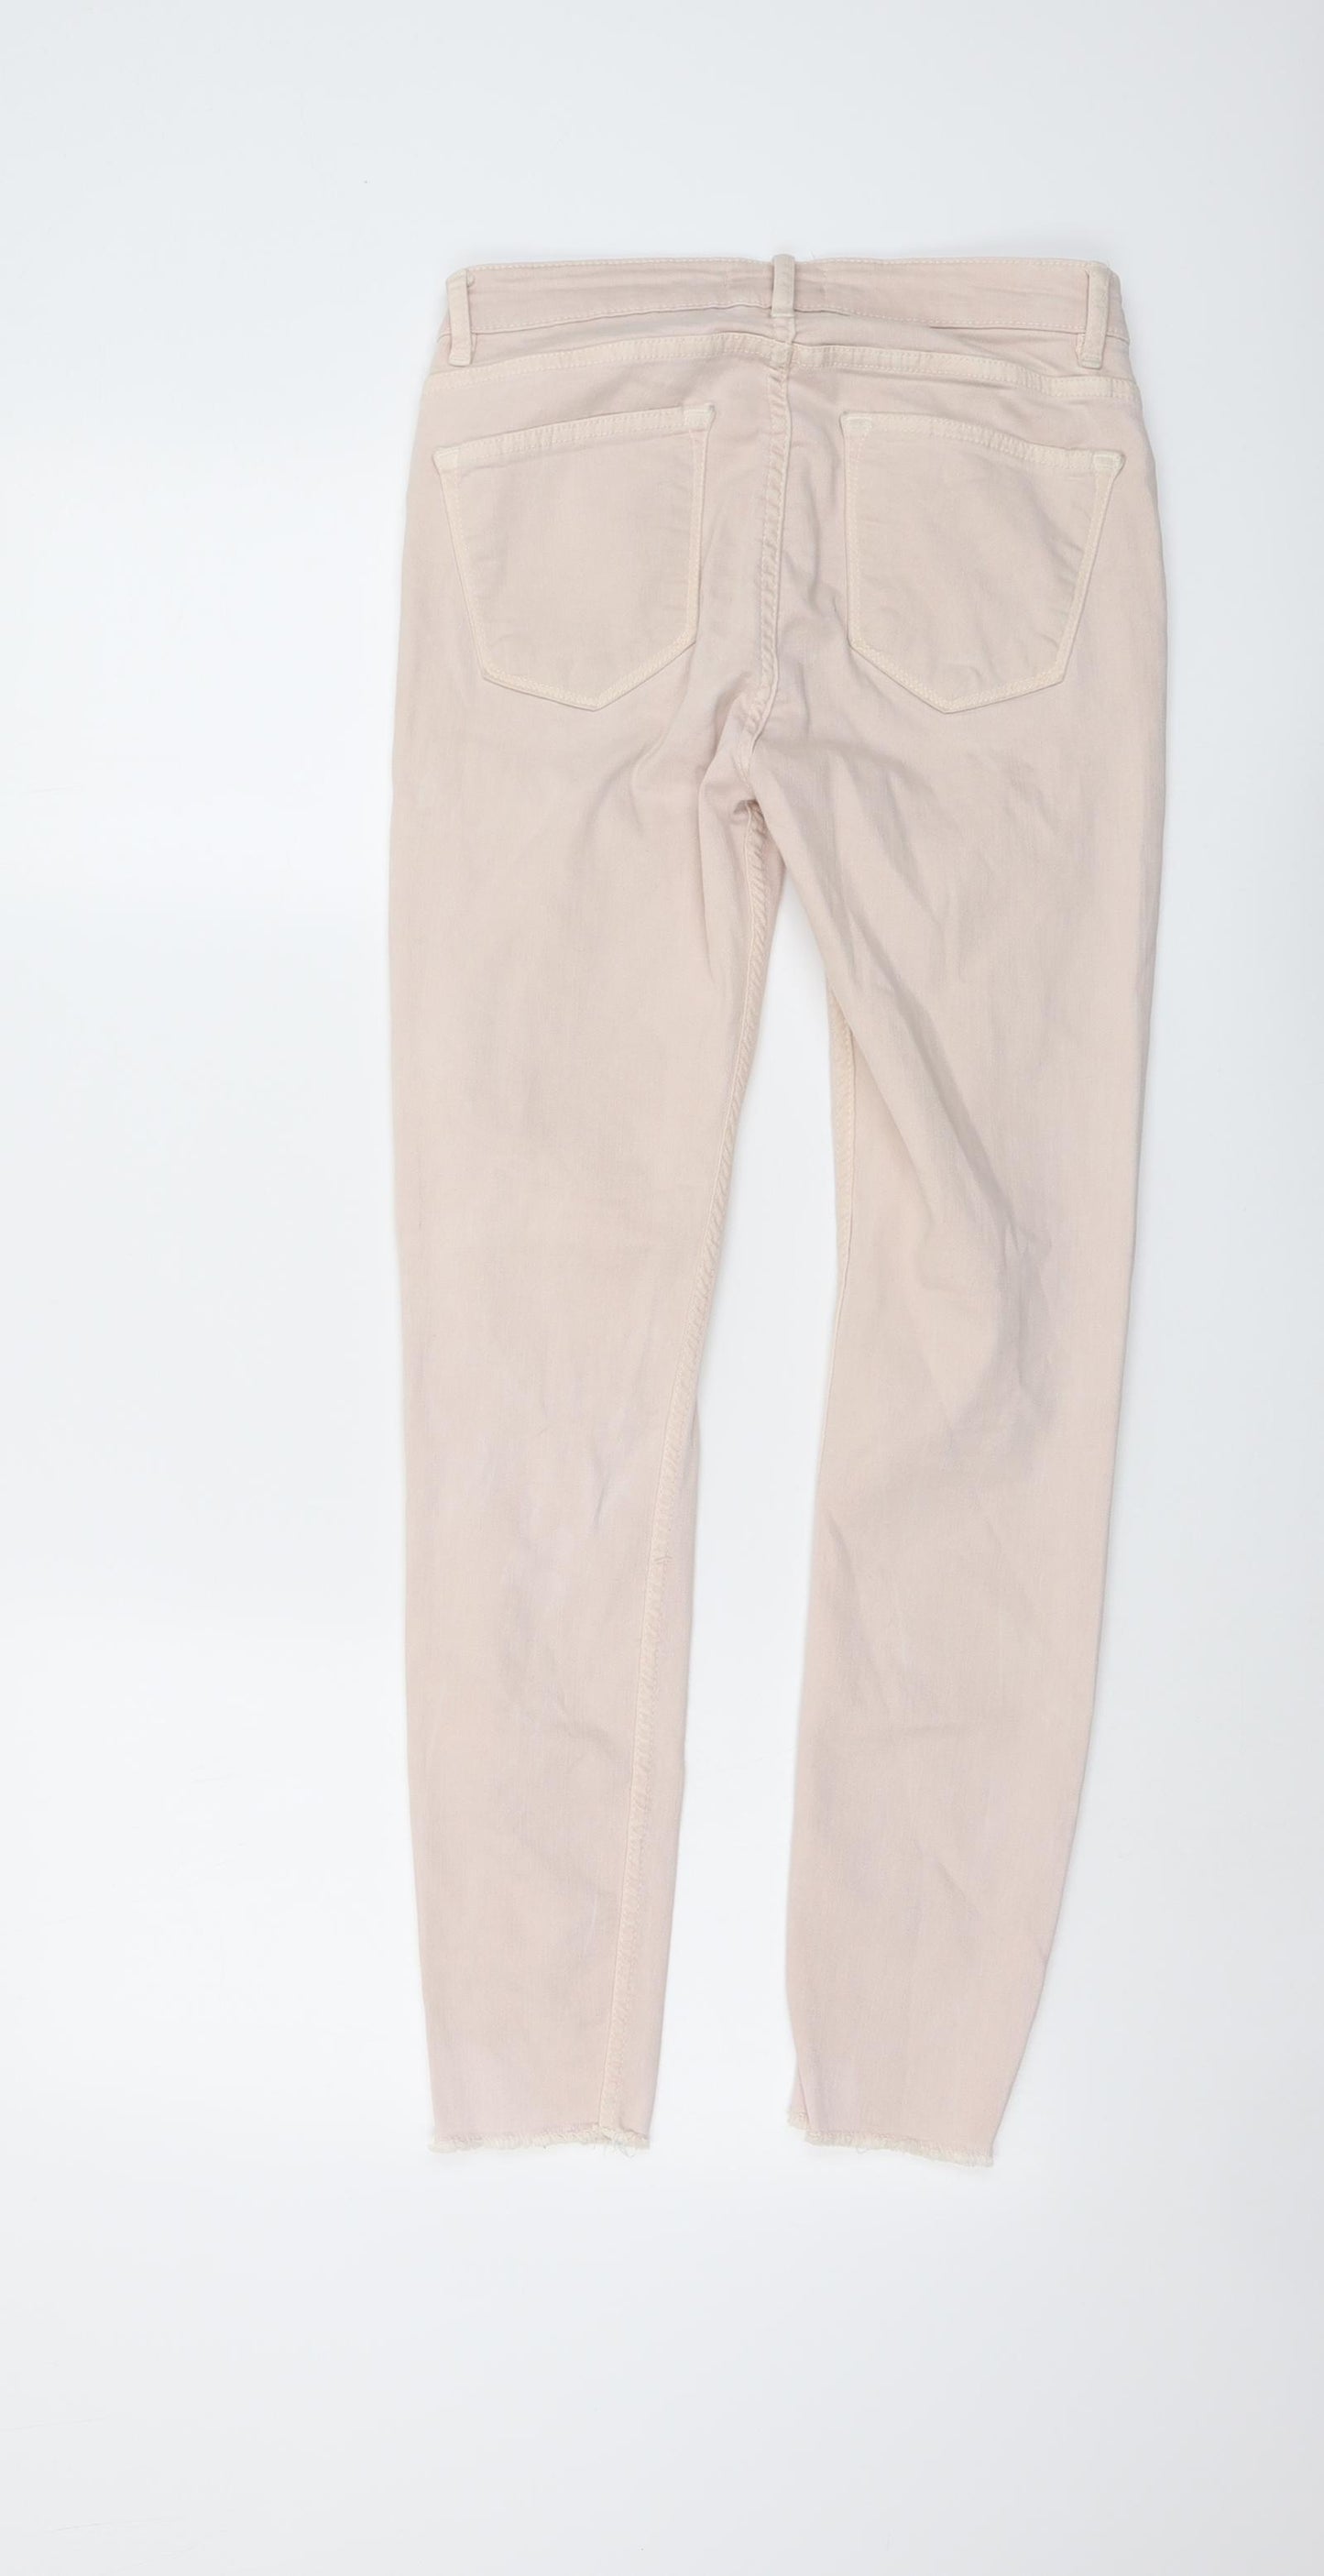 Zara Womens Beige Cotton Skinny Jeans Size 8 L27 in Regular Button